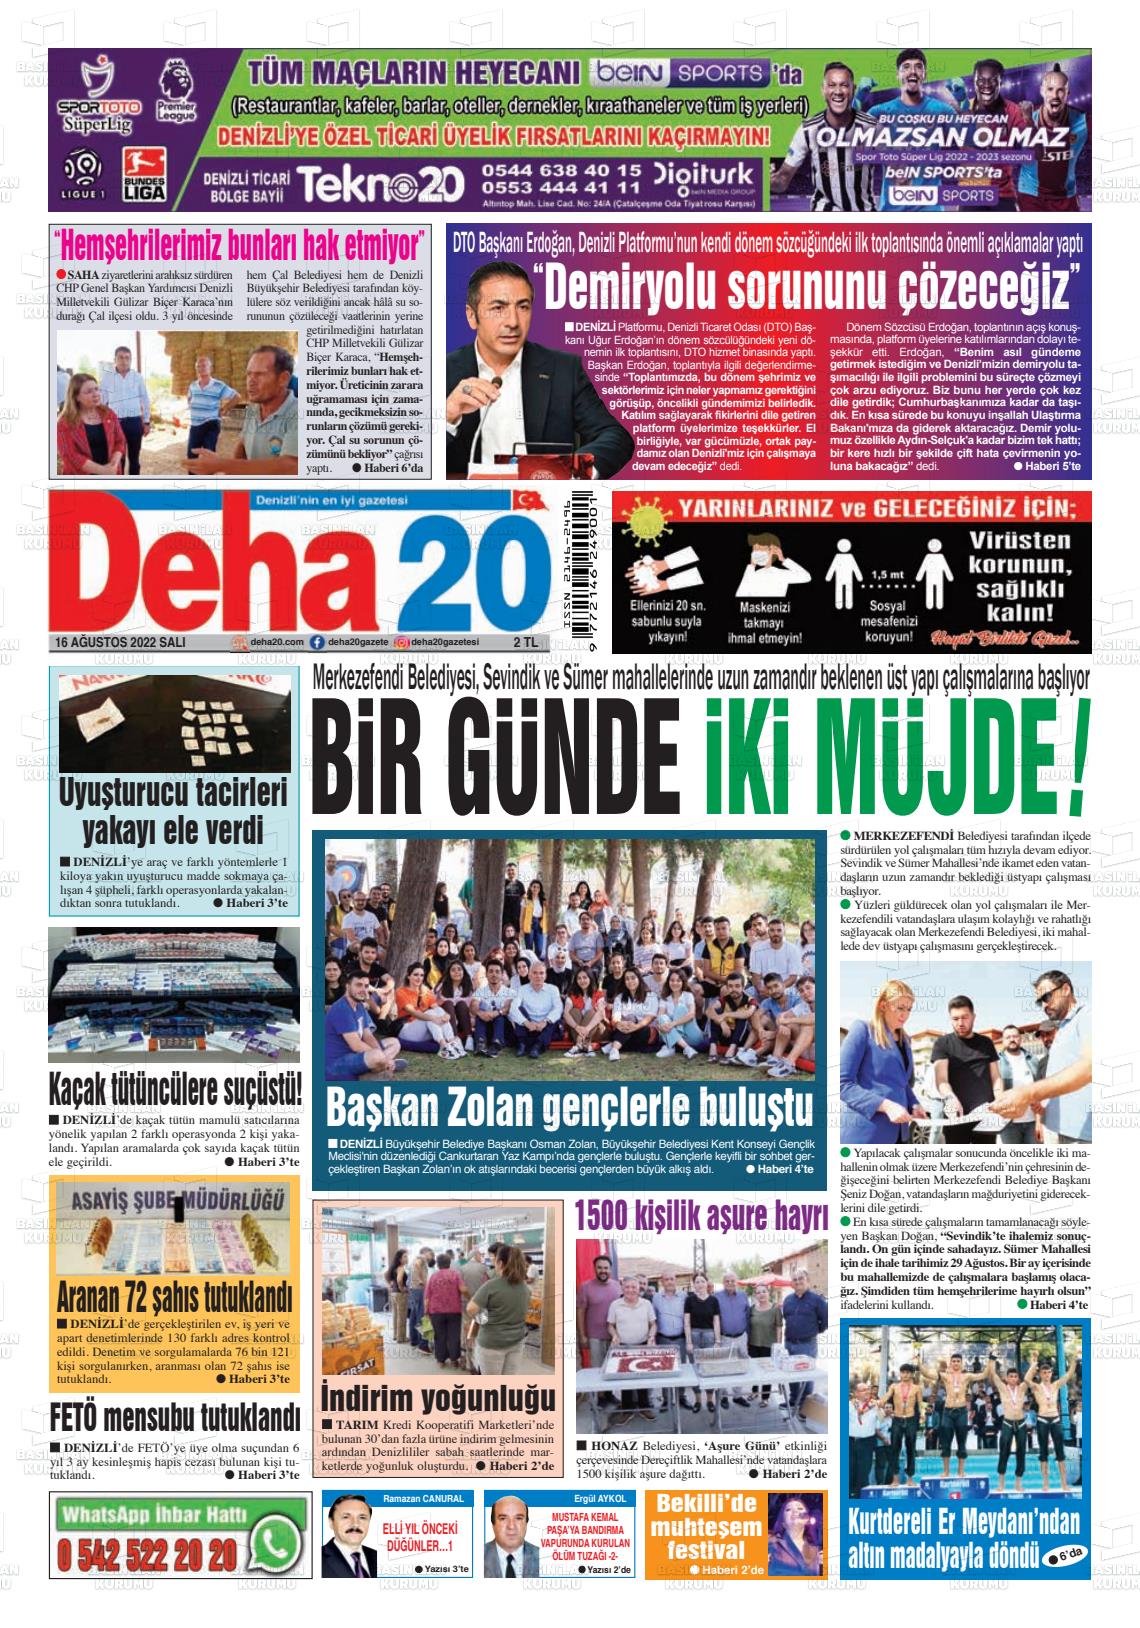 16 Ağustos 2022 Deha 20 Gazete Manşeti